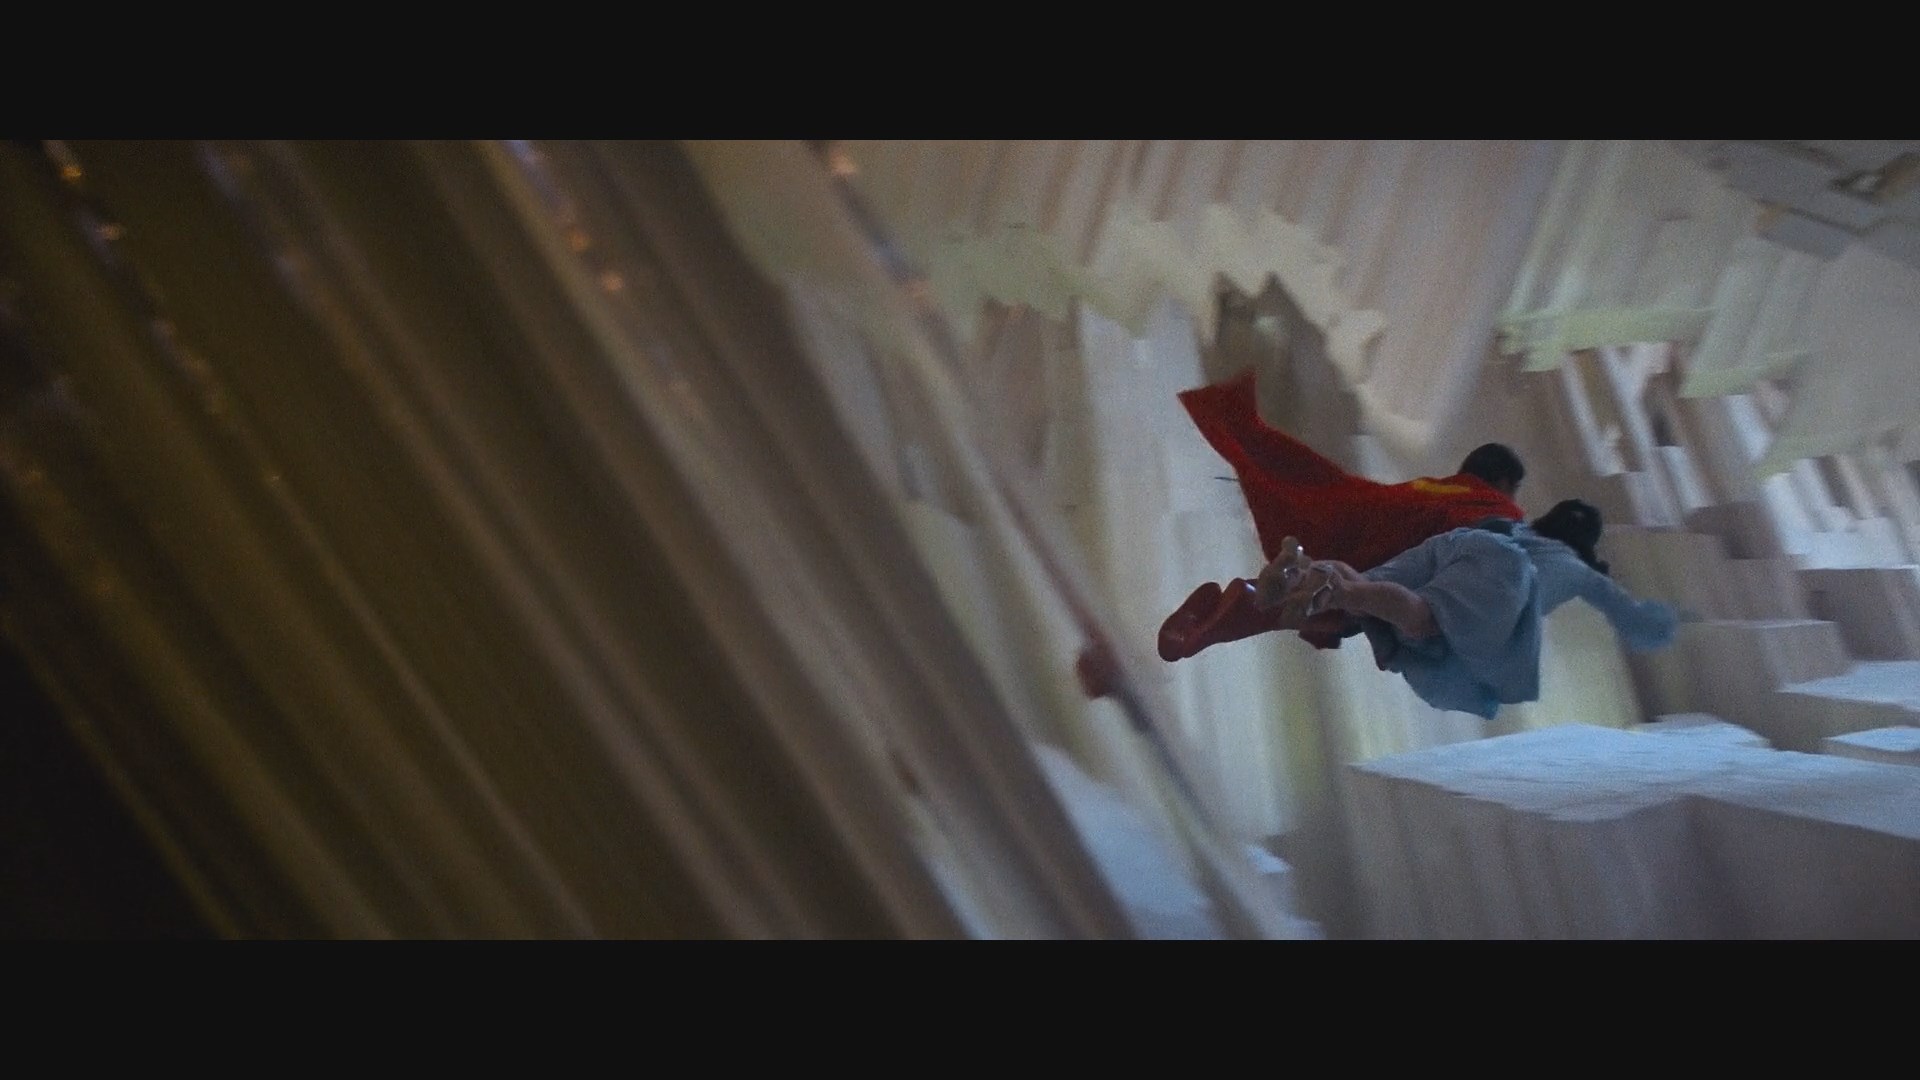 TODOS OS FILMES COM O SUPERMAN 78 [Christopher Reeve Clark Kent 1978 -  2023] 